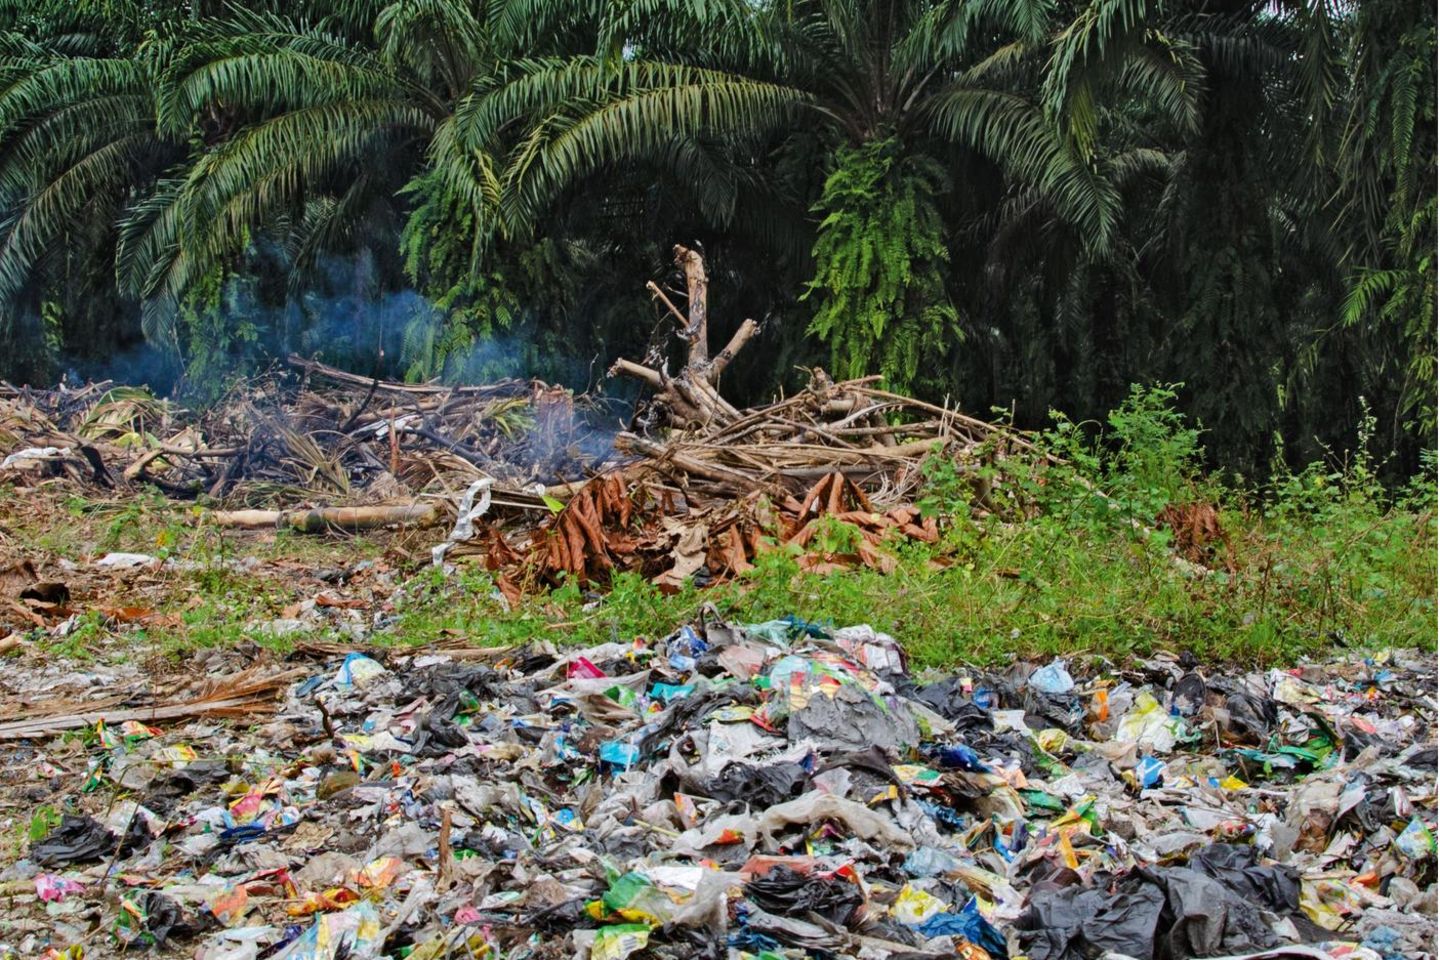 Plastik unter Palmen: Rund um das Dorf türmen sich Tüten und Verpackungen